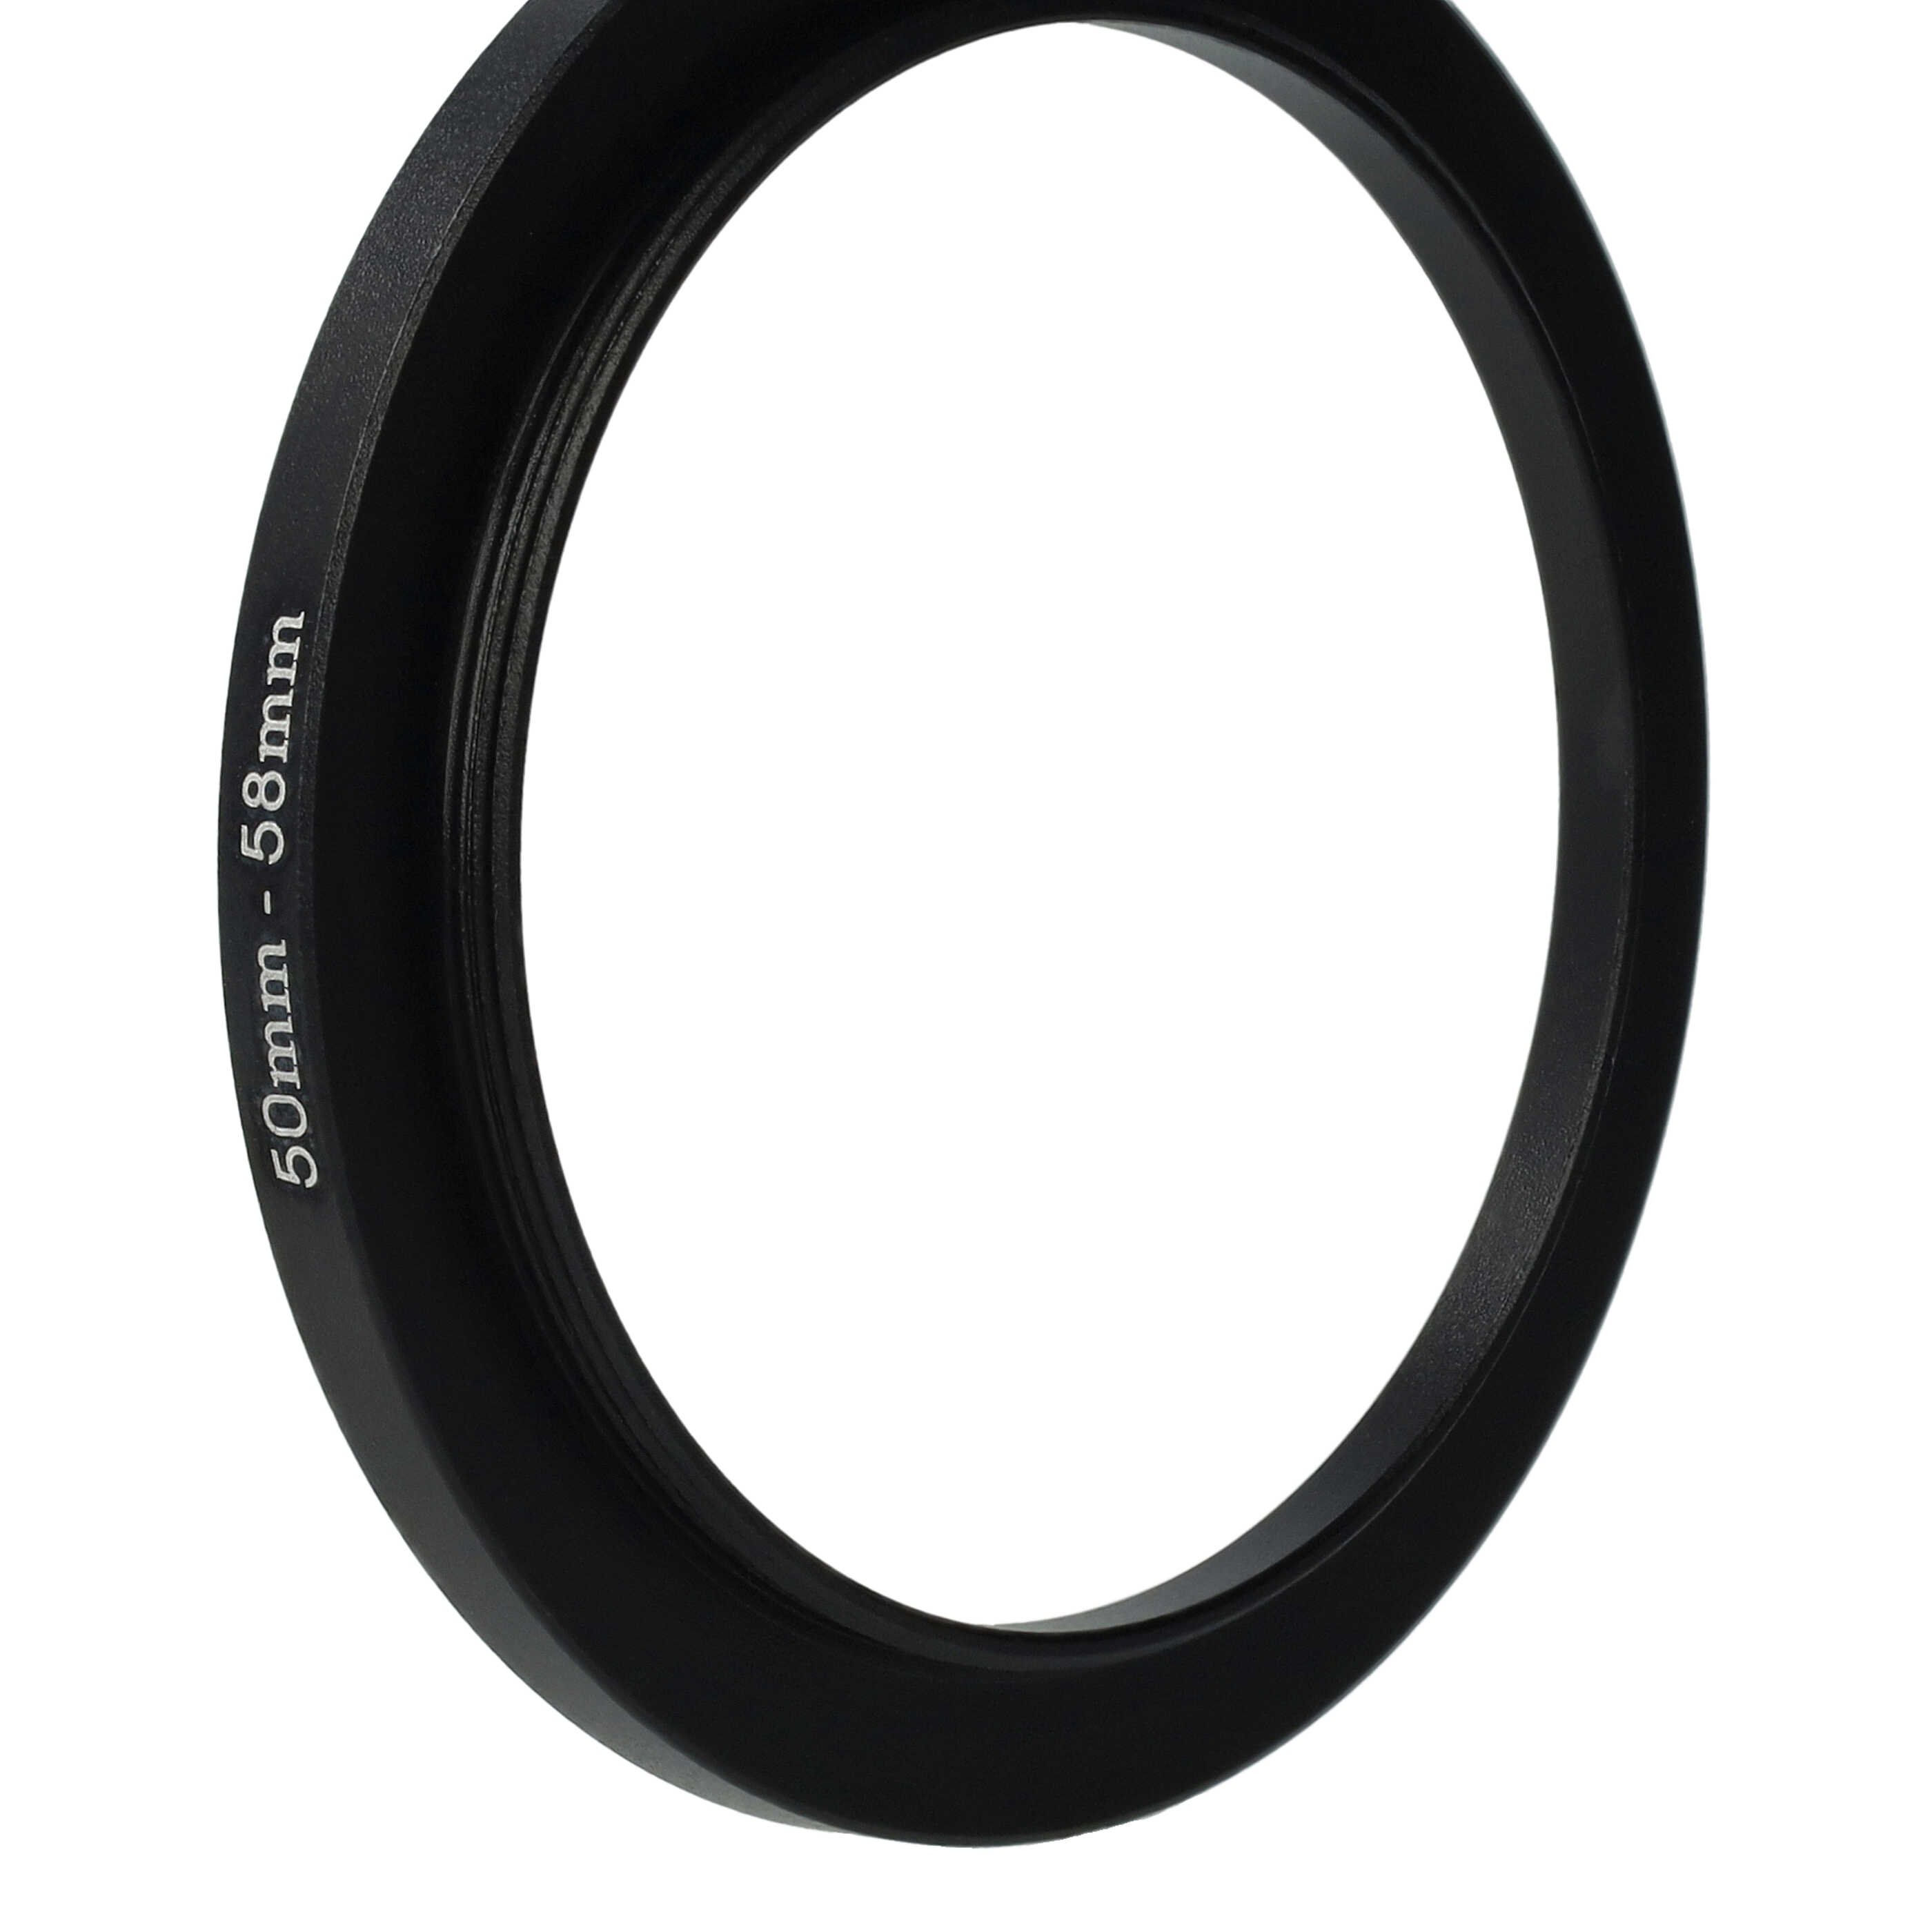 Step-Up-Ring Adapter 50 mm auf 58 mm passend für diverse Kamera-Objektive - Filteradapter